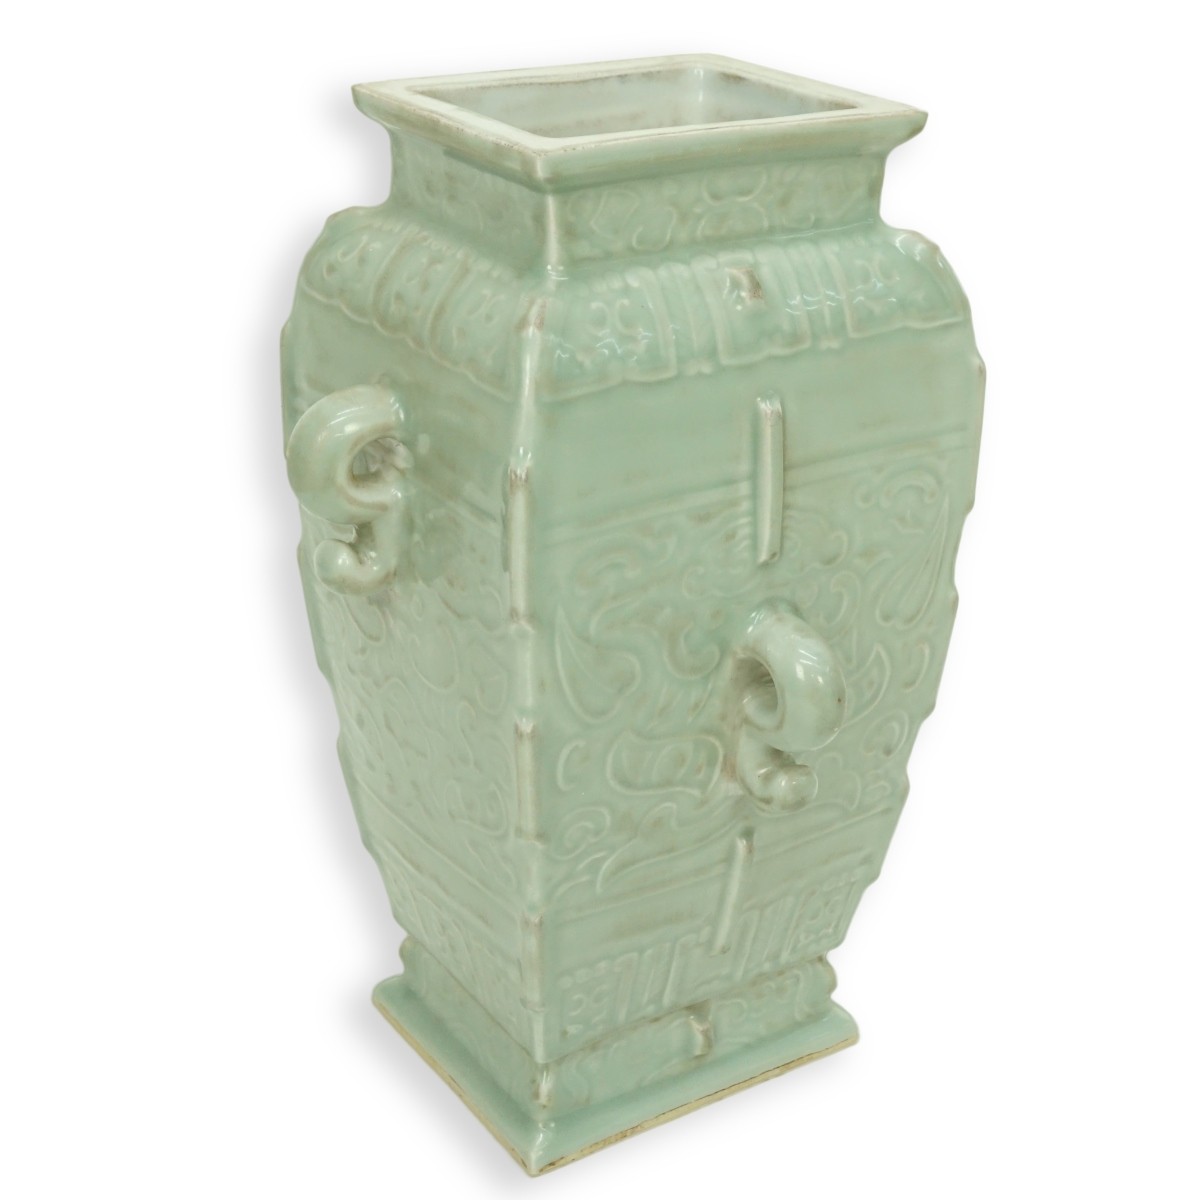 Chinese Celadon Glazed Archaic Style Vase